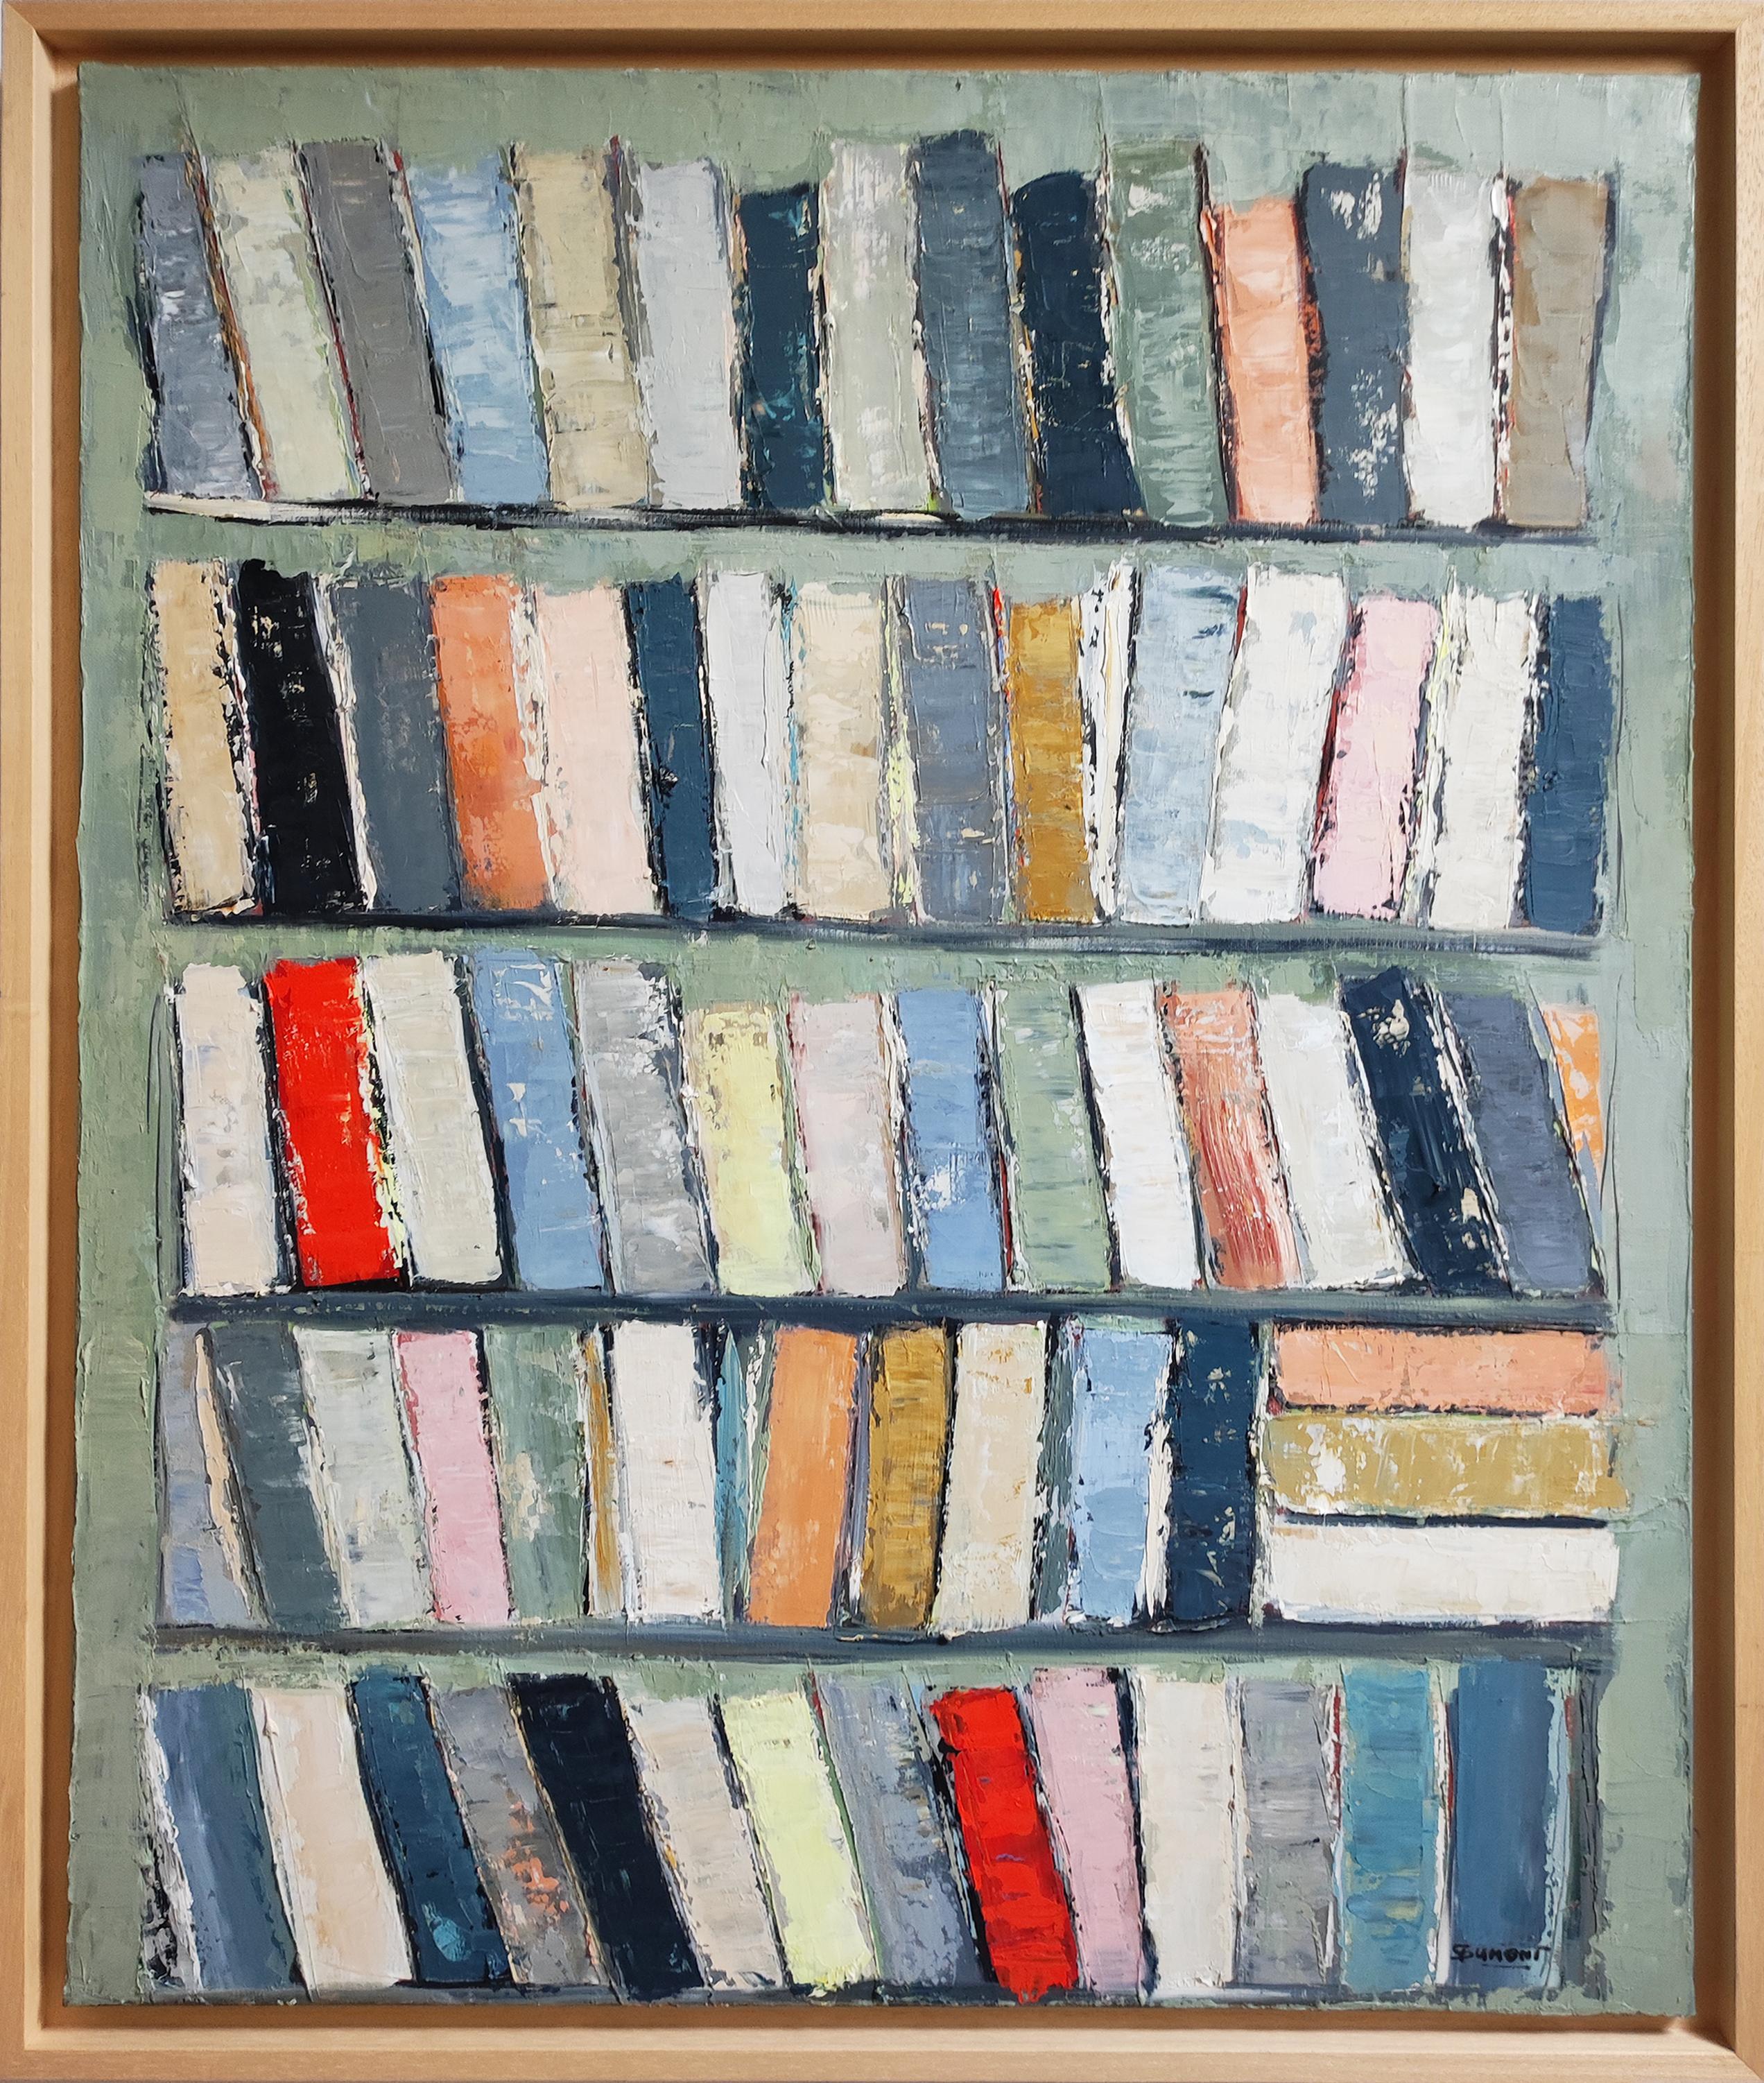 SOPHIE DUMONT Abstract Painting – Archivteile, Farbbücher in Bibliothek, abstrakt, Expressionismus, Öl auf Leinwand, Grün